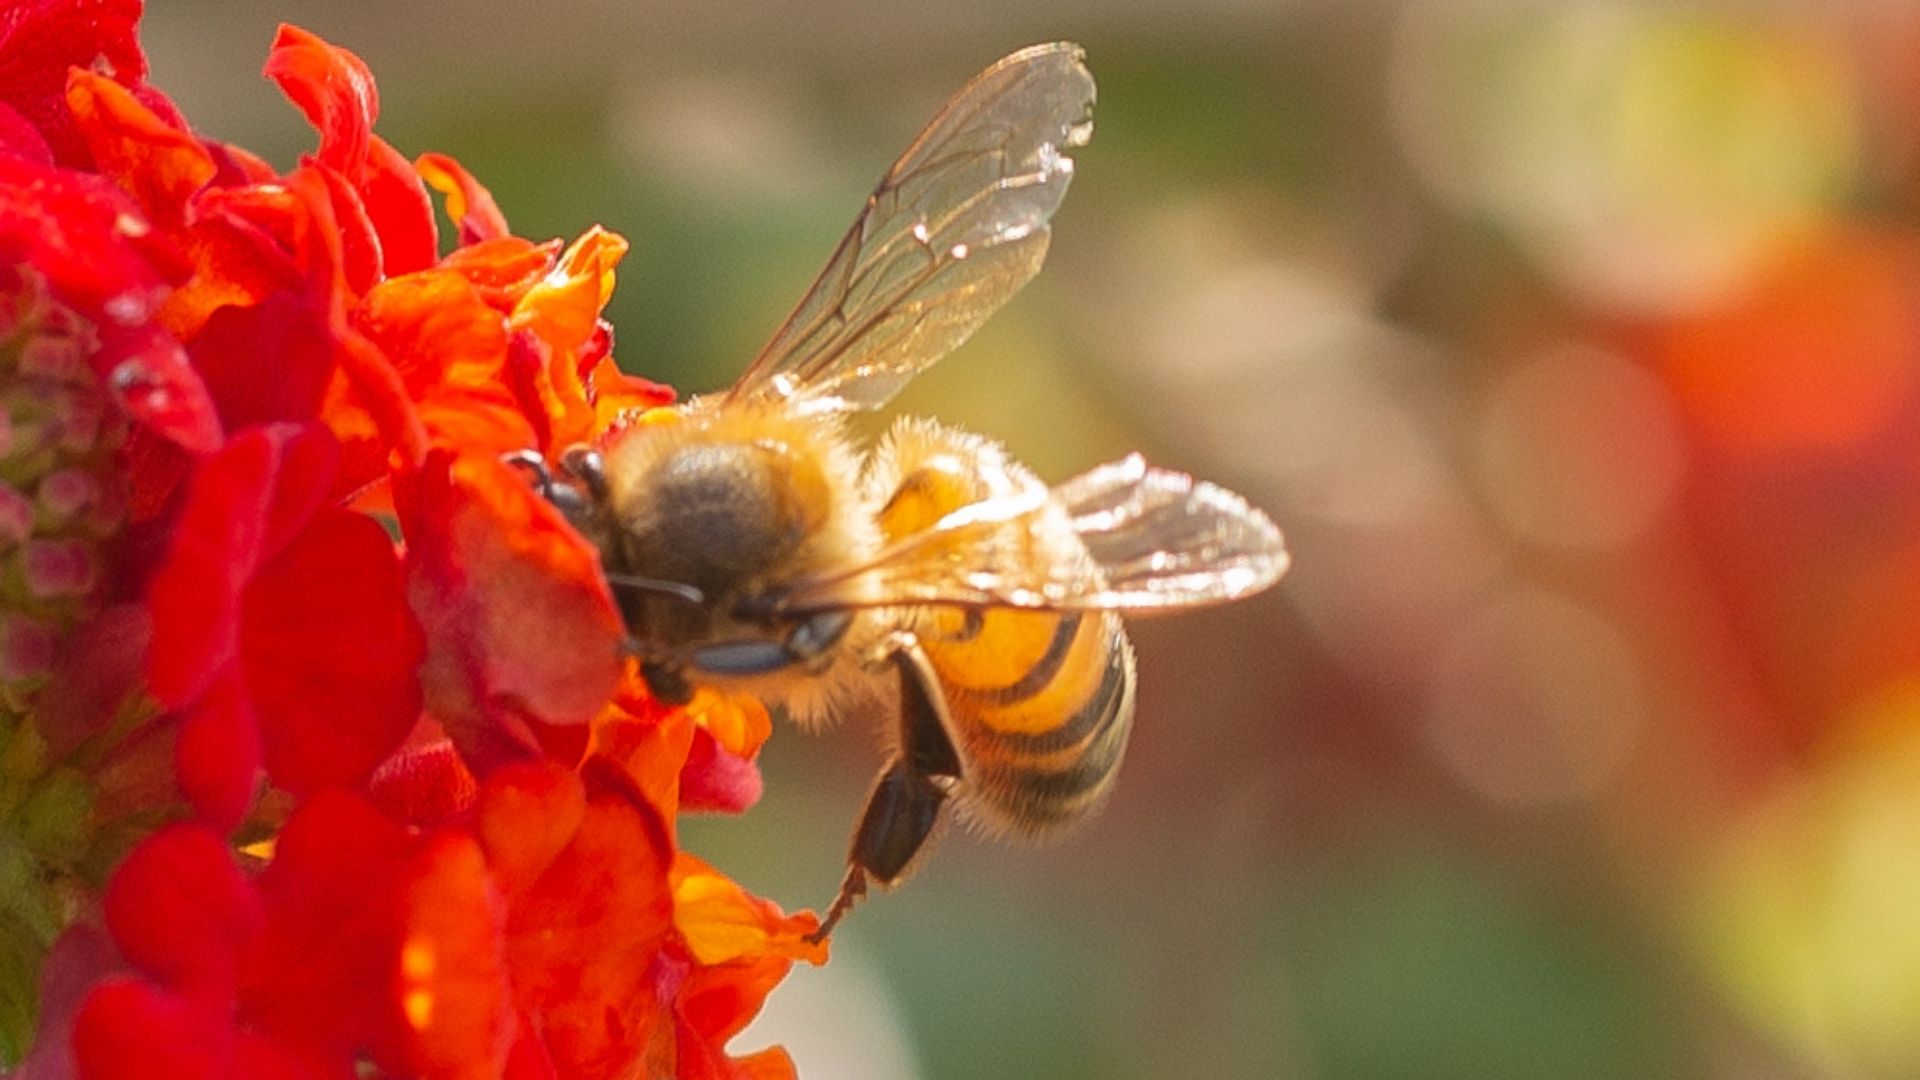 An Urban Rooftop Garden for Pollinators - FineGardening